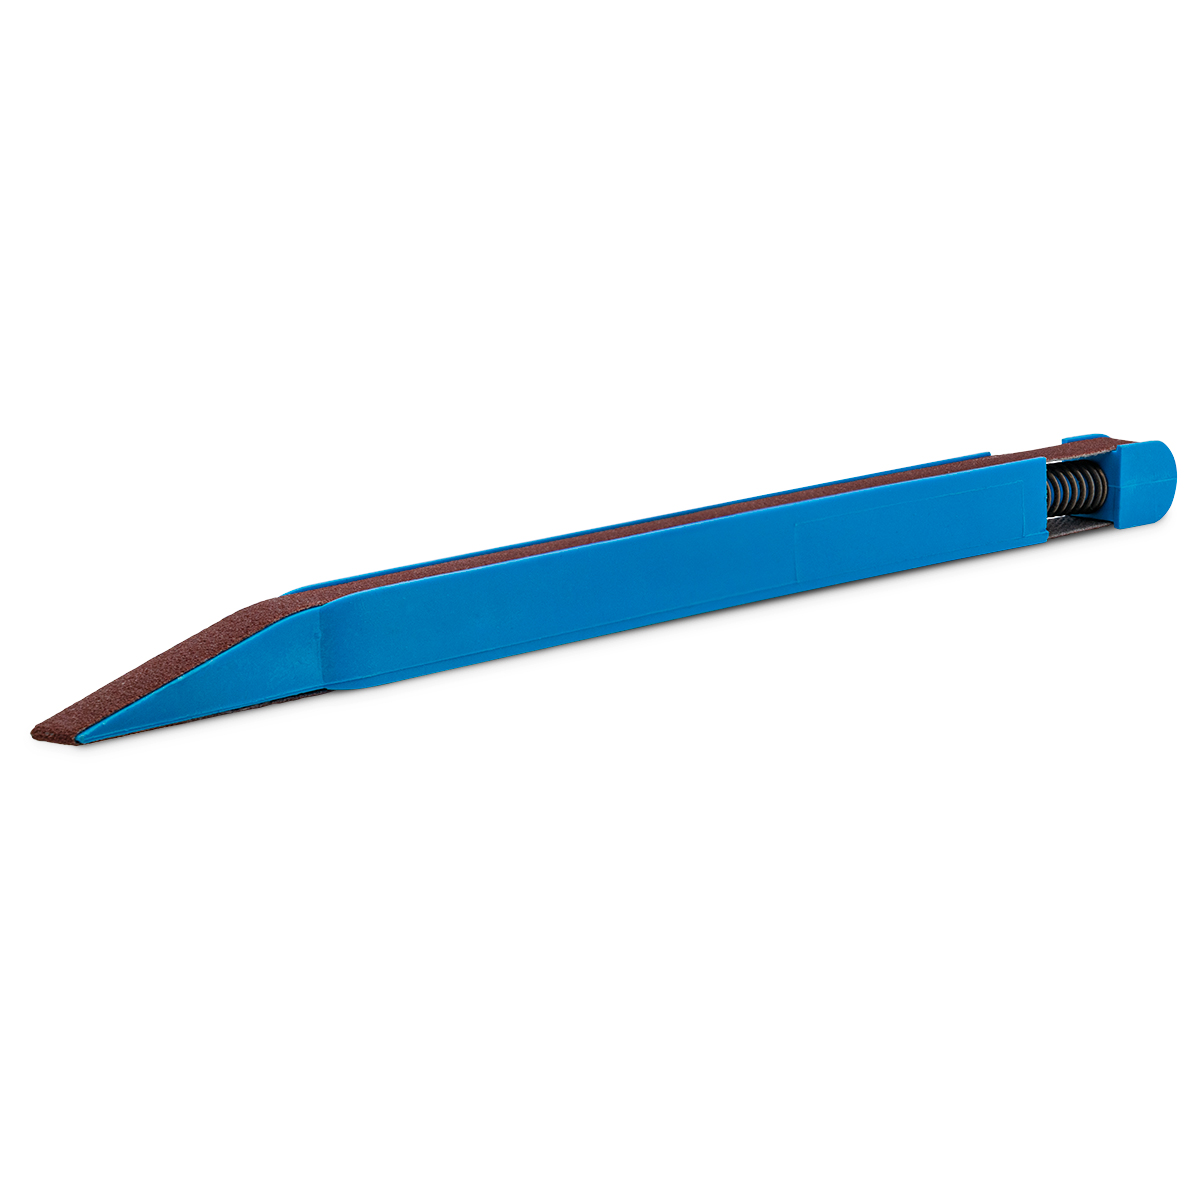 Schleifstift, Korn 240, blau, für Schleifbänder mit 7 x 330 mm